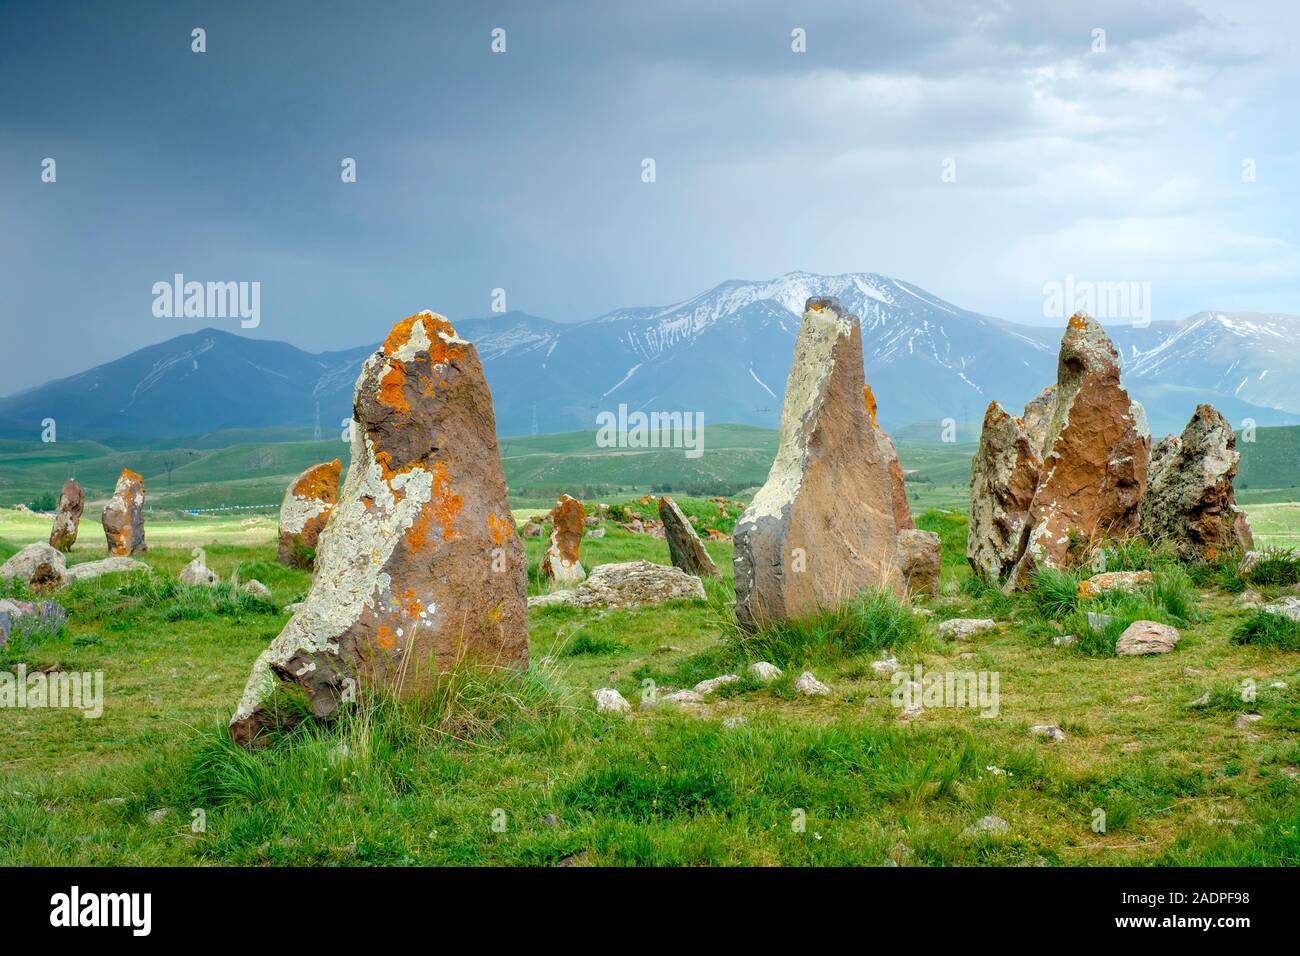 Zorats Karer (Carahunge) mégalithes (menhirs), Sisian, province de Syunik, Arménie Banque D'Images